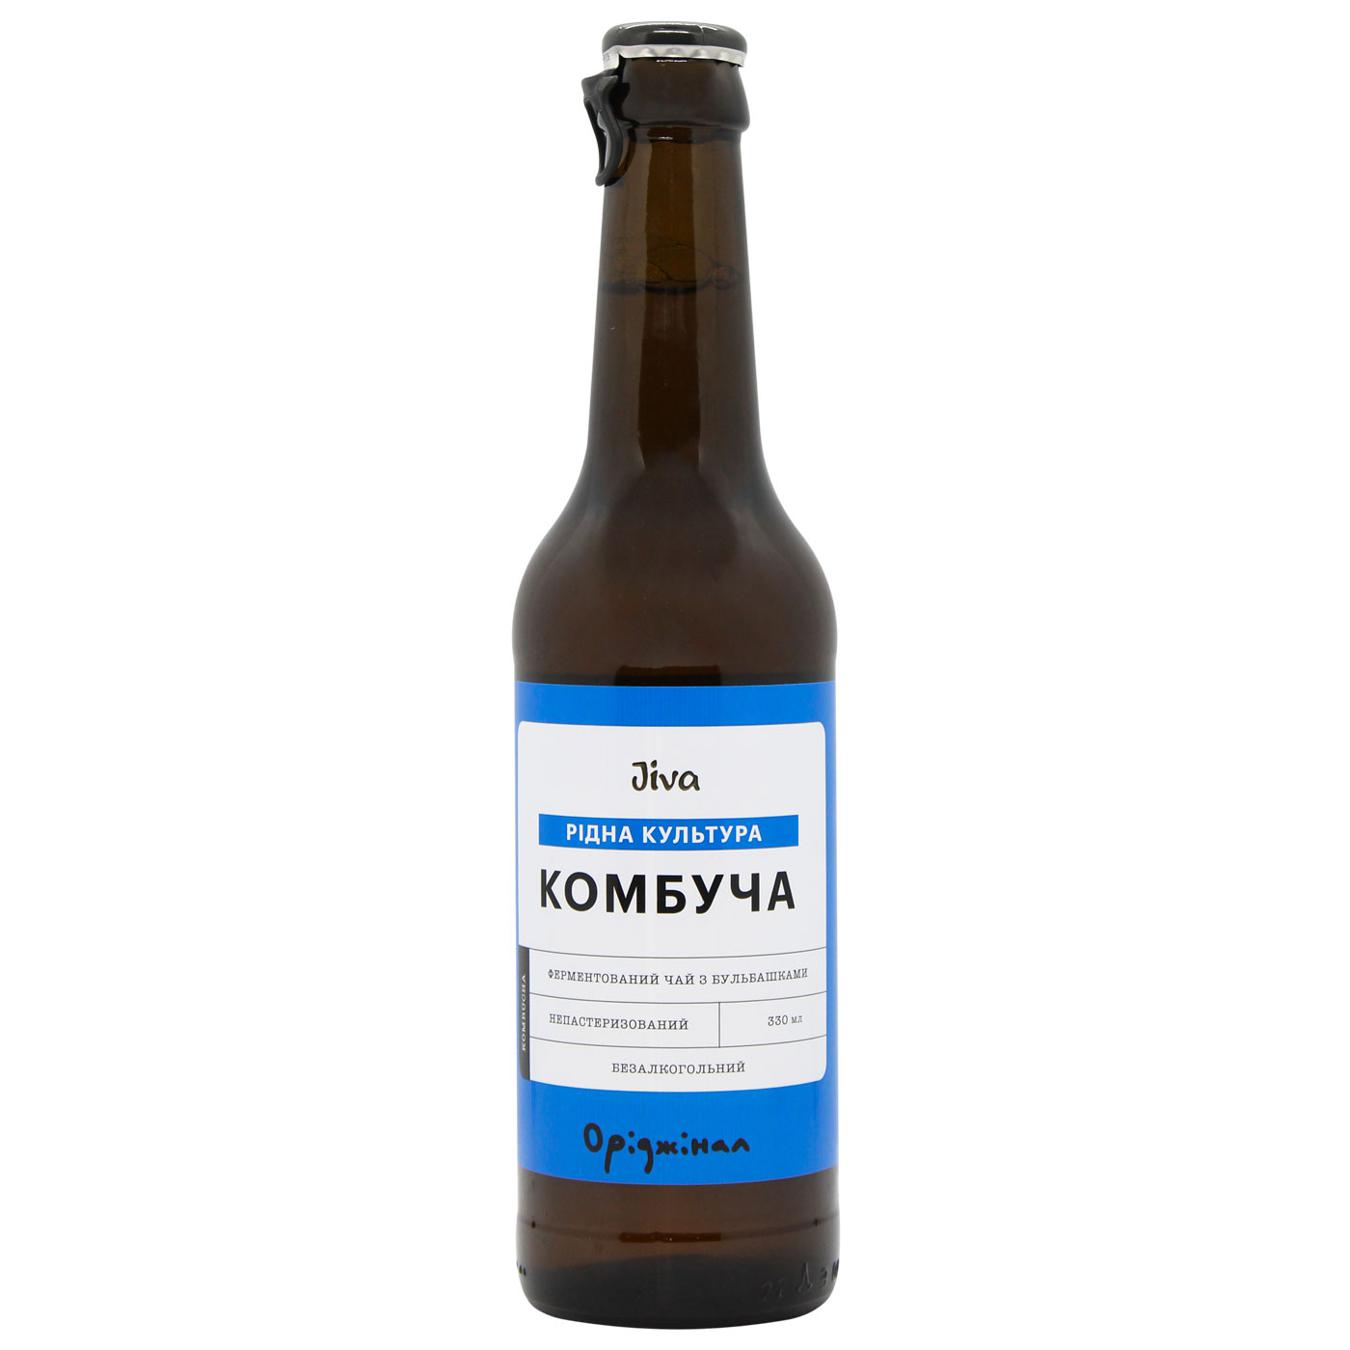 Non-carbonated drink Jiva Kombucha original 0.33 glass